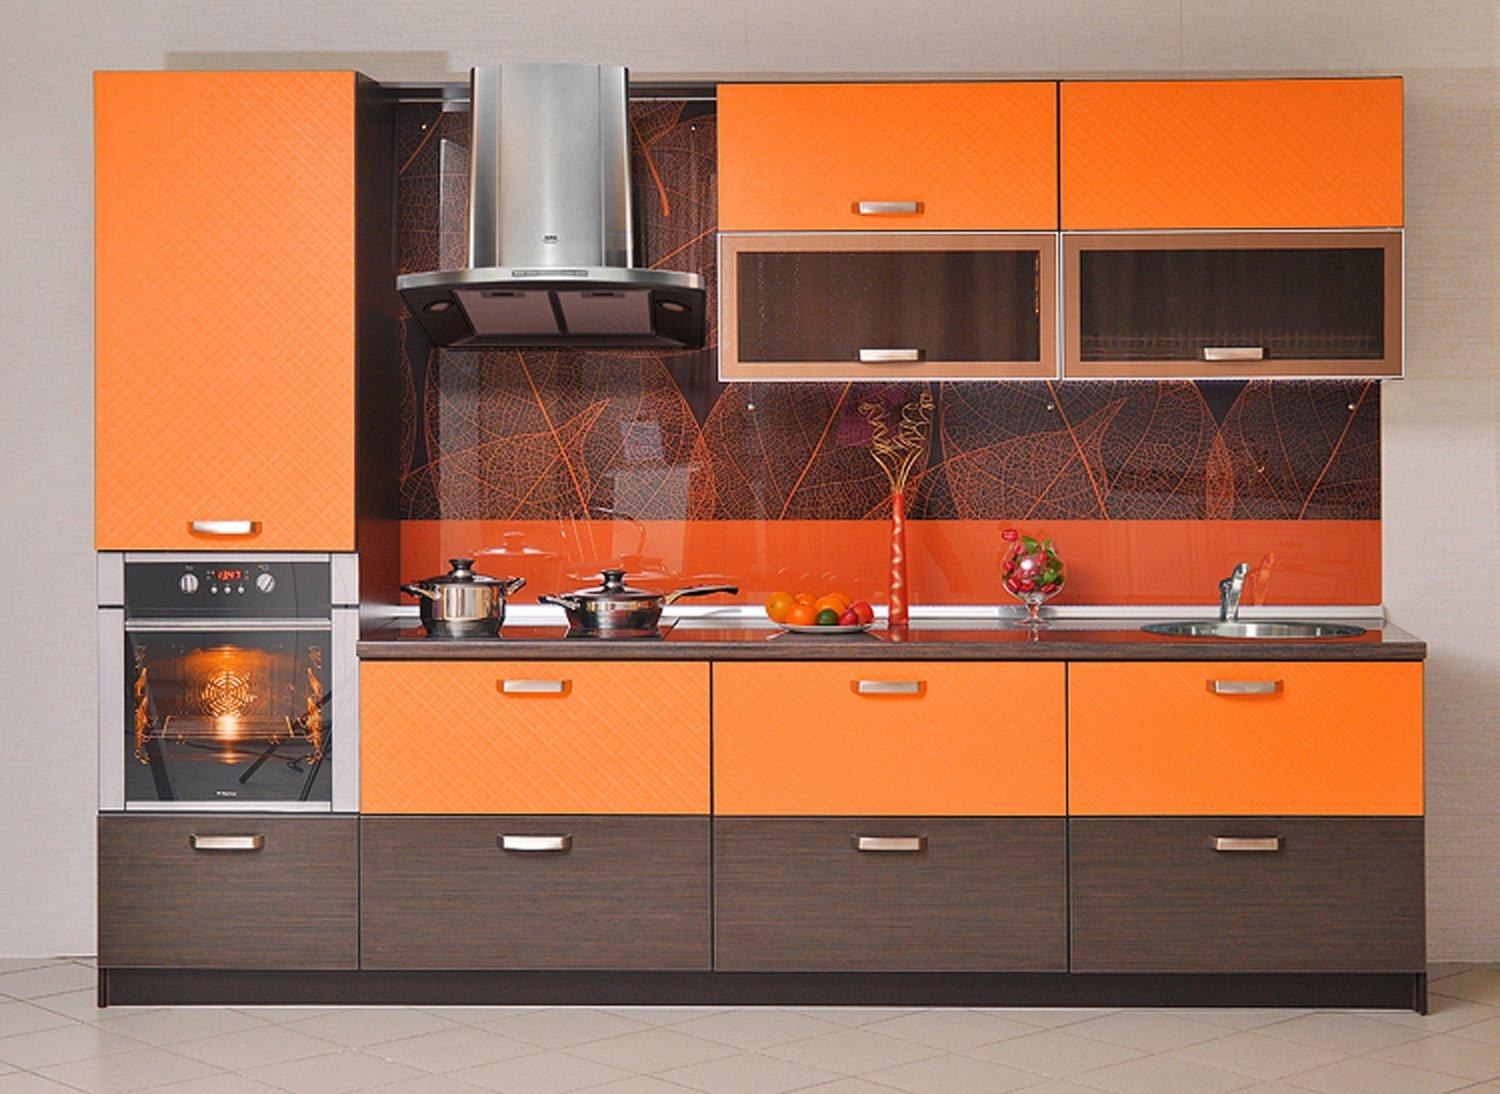 цвет столешницы к оранжевой кухне